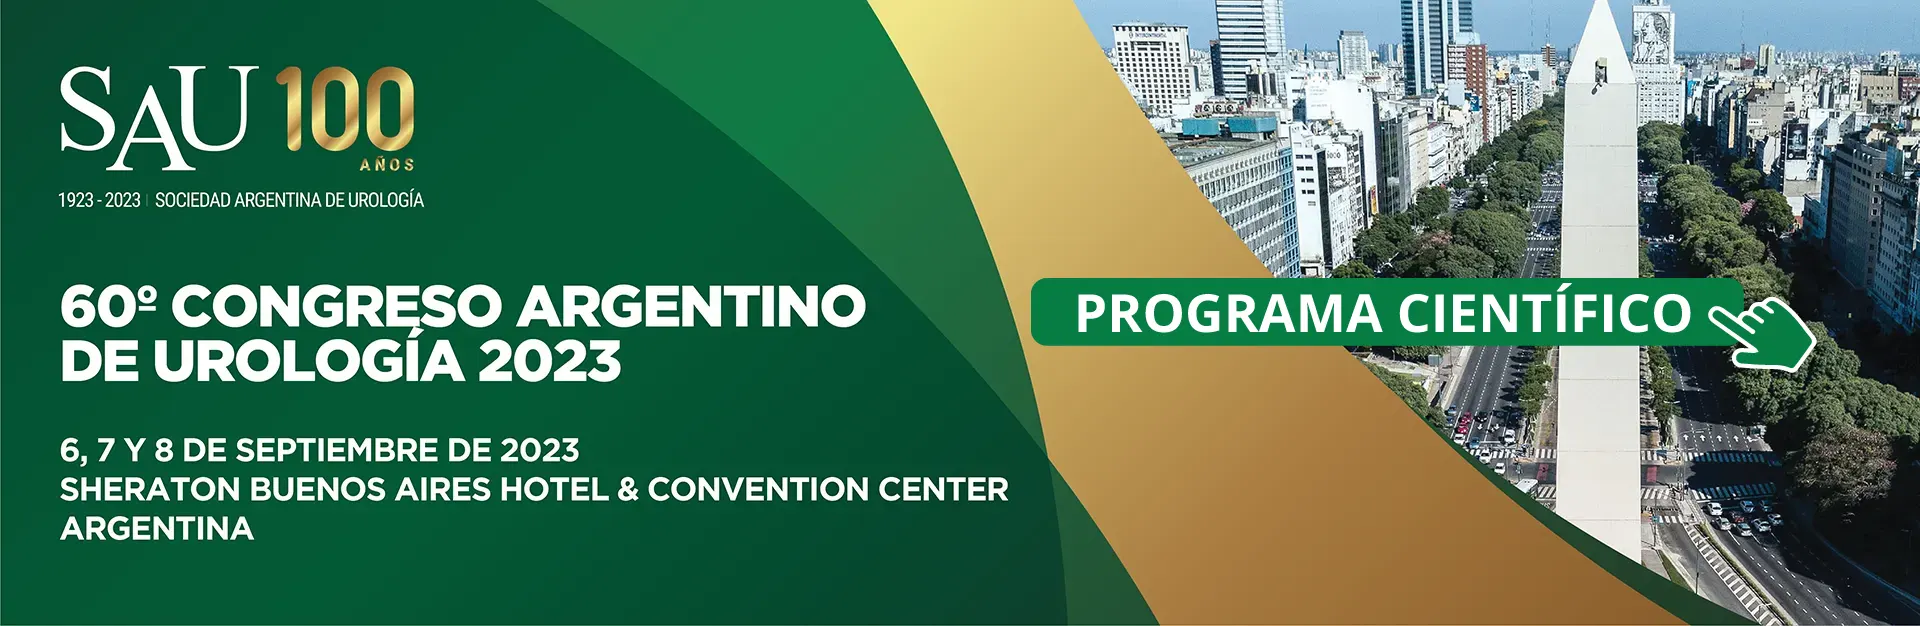 60° Congreso Argentino de Urología - SAU 2023. 6, 7 y 8 de septiembre de 2023. Sheraton Buenos Aires Hotel & Convention Center. Programa científico.